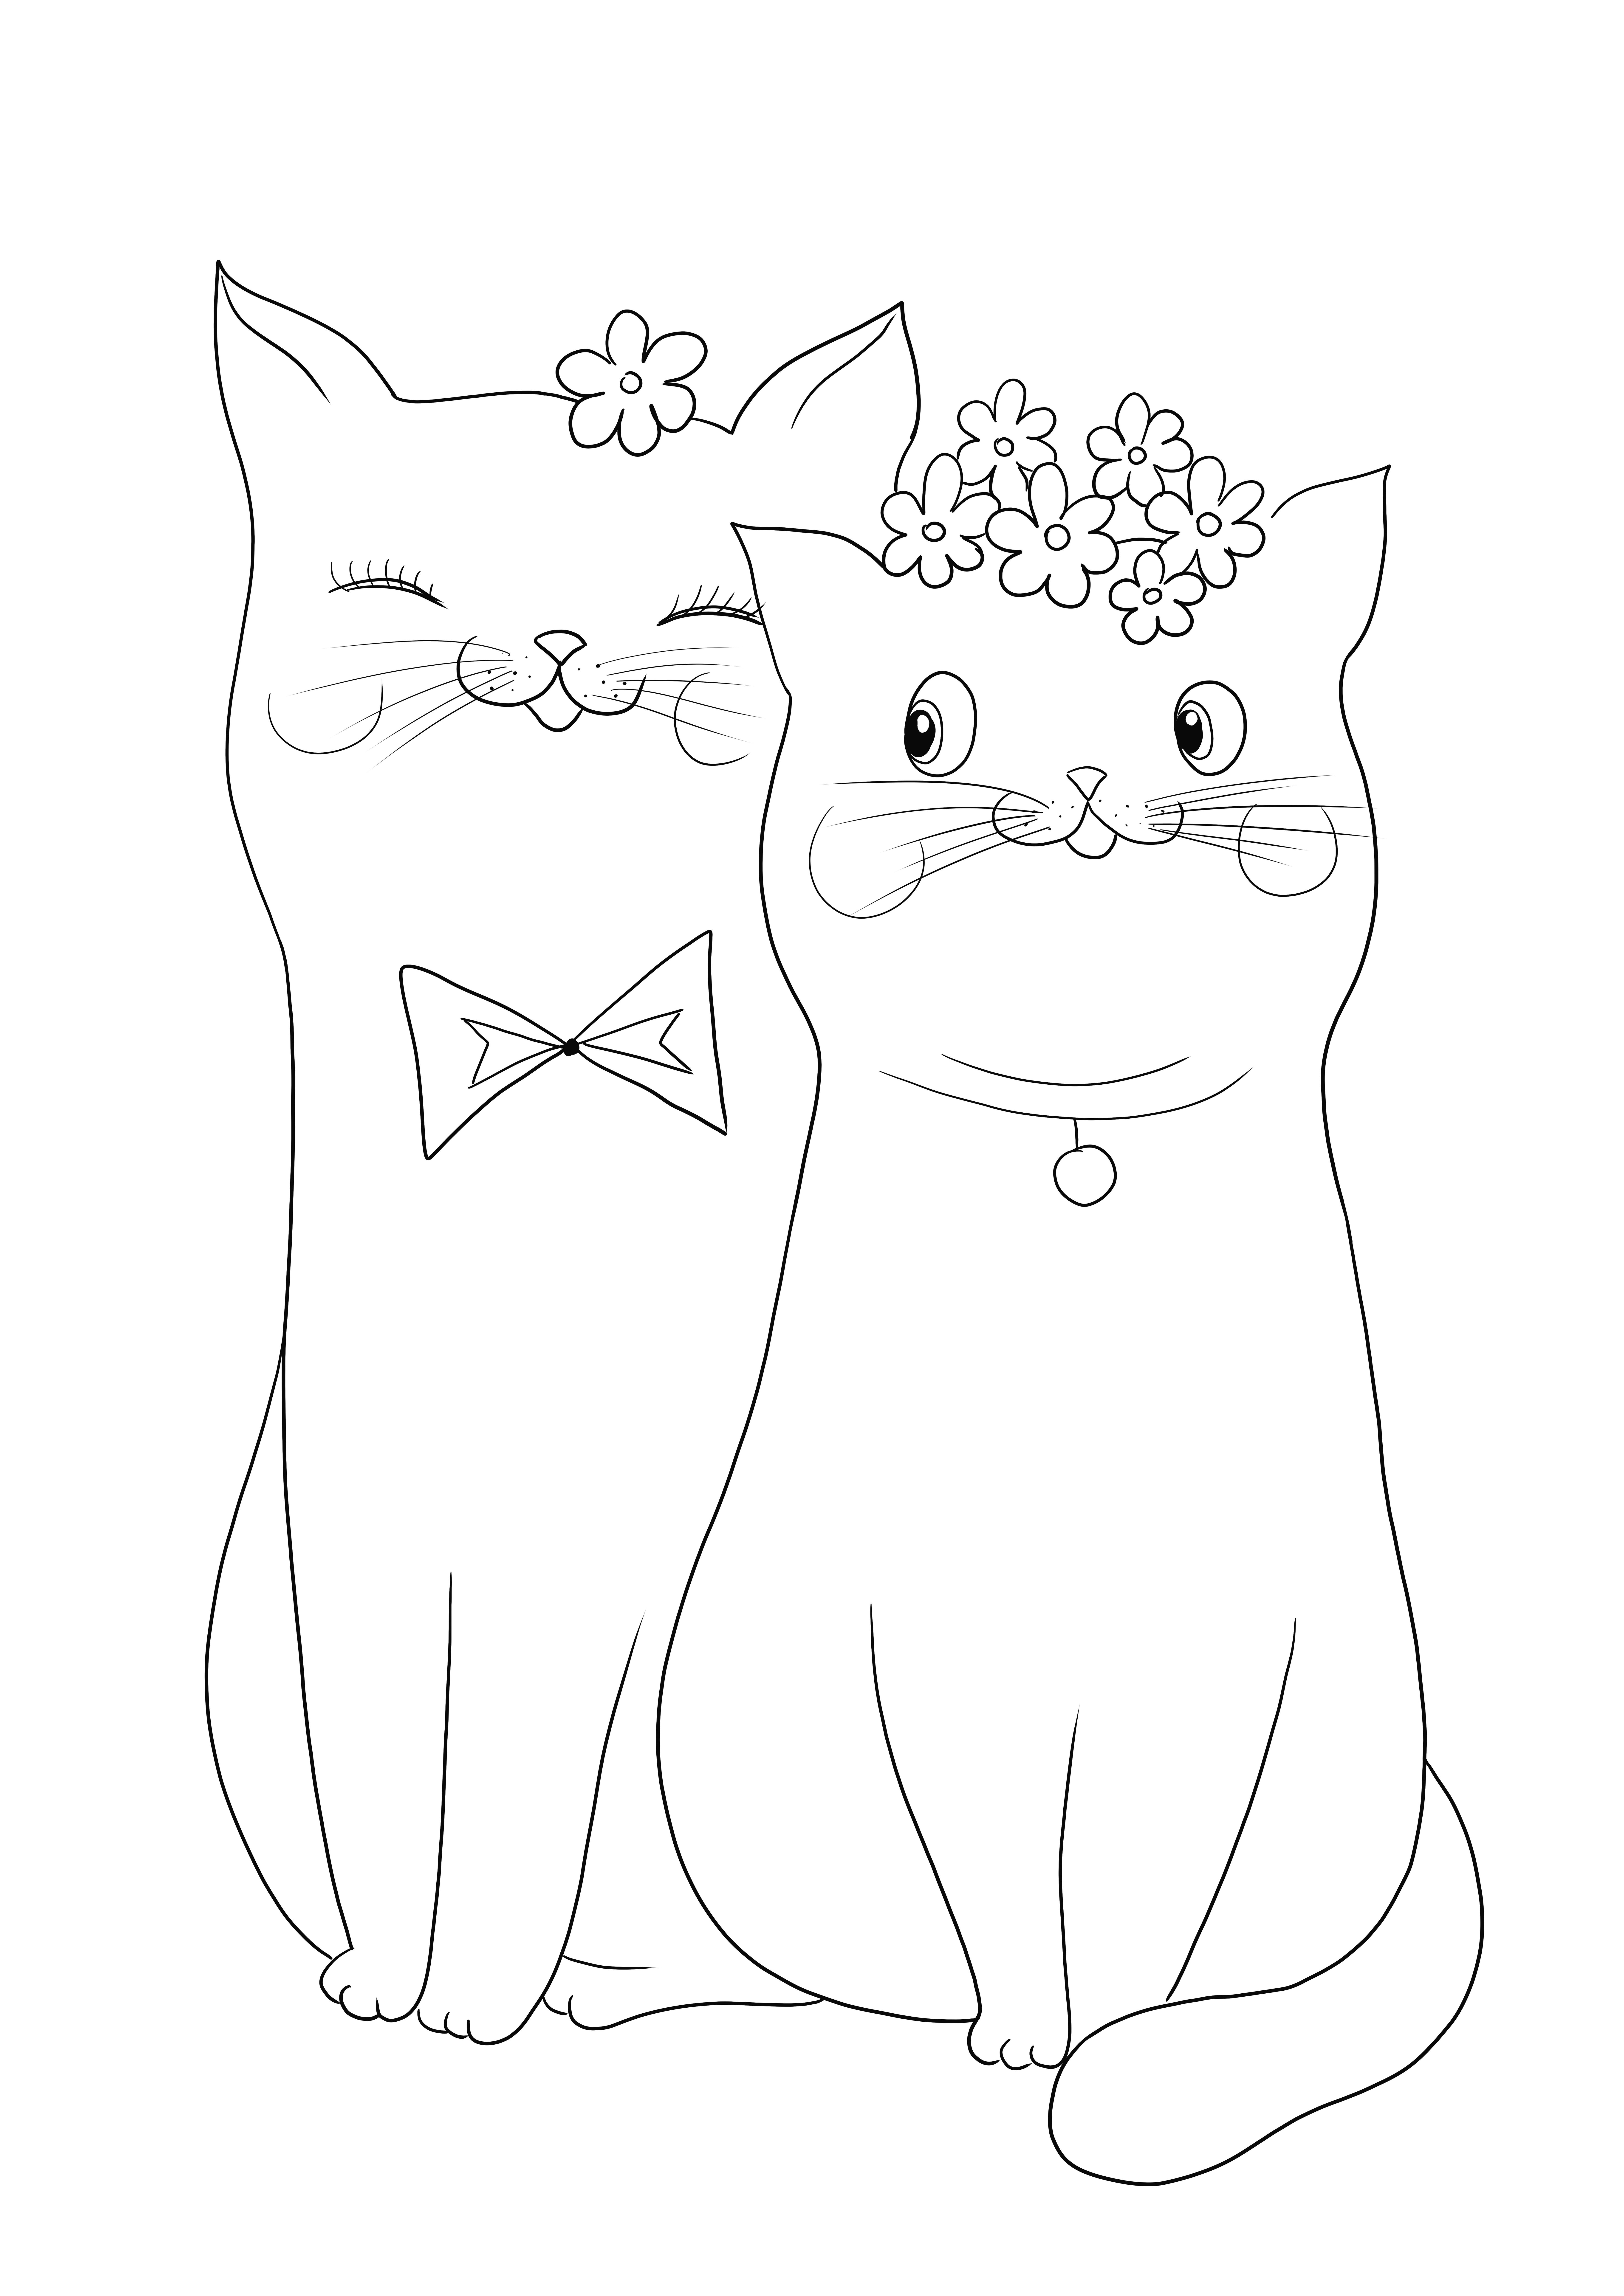 Two Cute Cats in Love gratis untuk diwarnai dan lembar unduhan